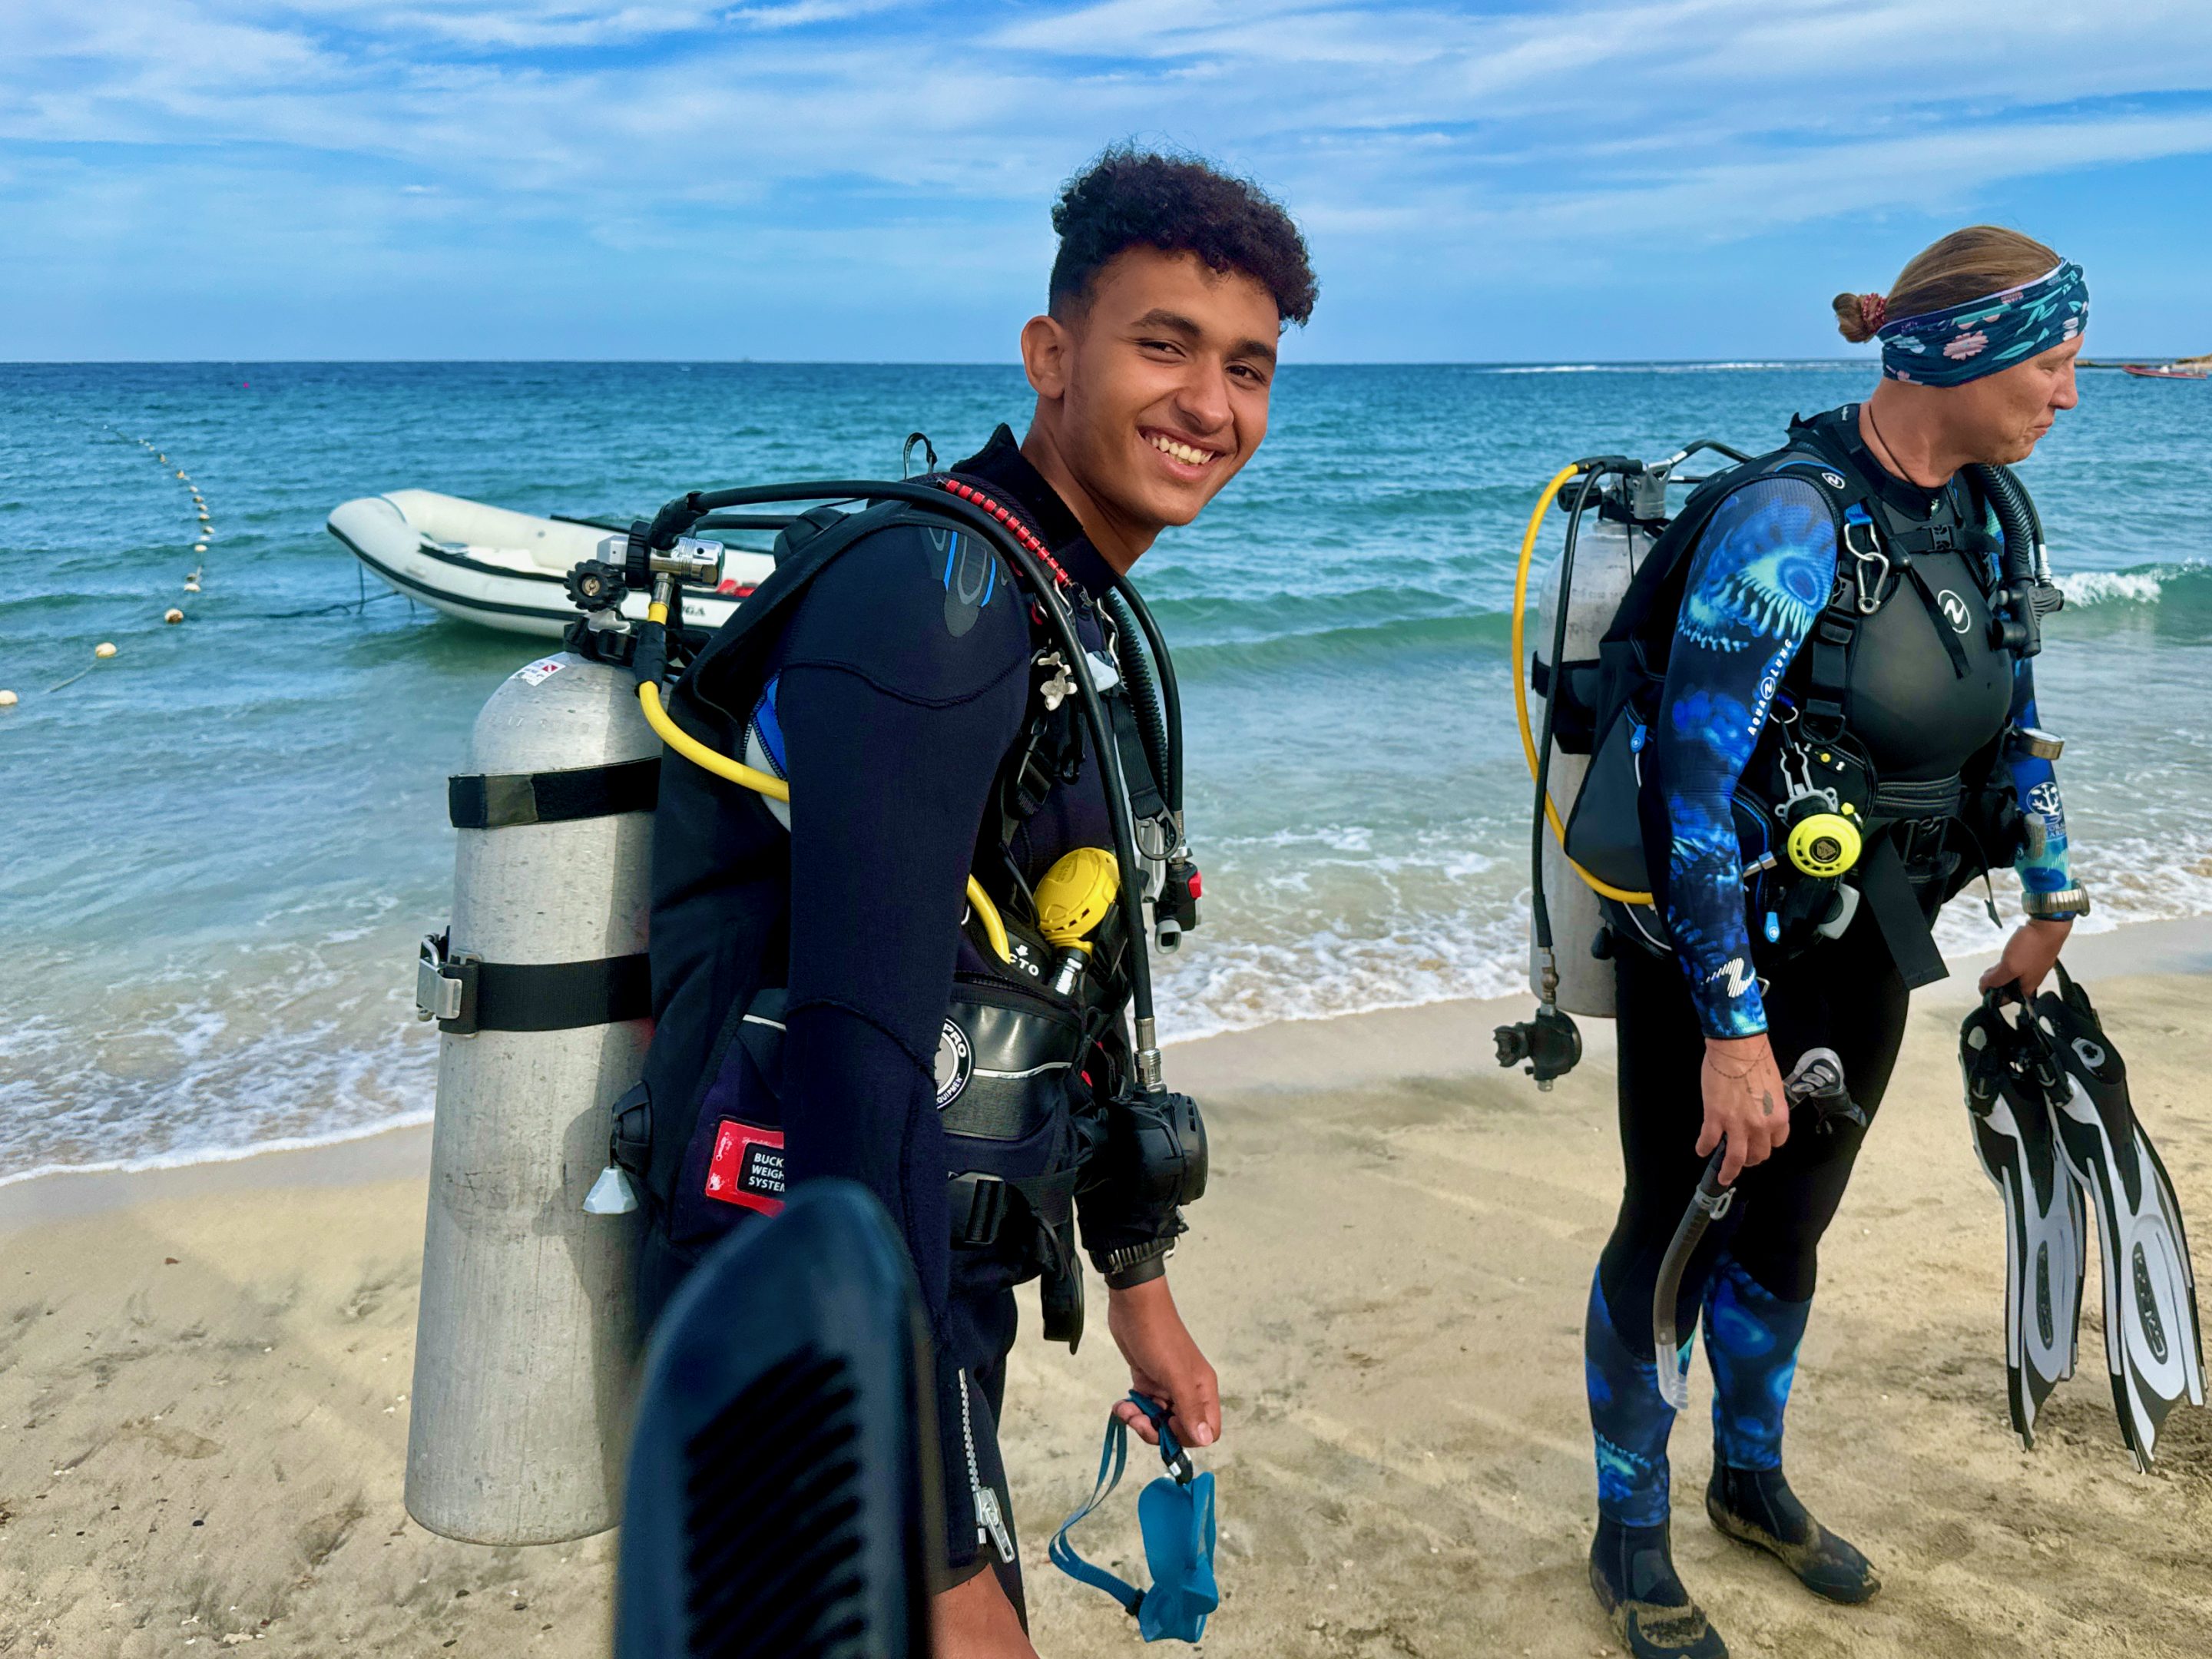 Entspanntes Urlaubstauchen direkt vom Strand aus – leichter kommst du im Urlaub kaum ins Wasser. Foto: Sascha Tegtmeyer Tauchen Abu Dabbab Blue Ocean Dive Center Erfahrungen